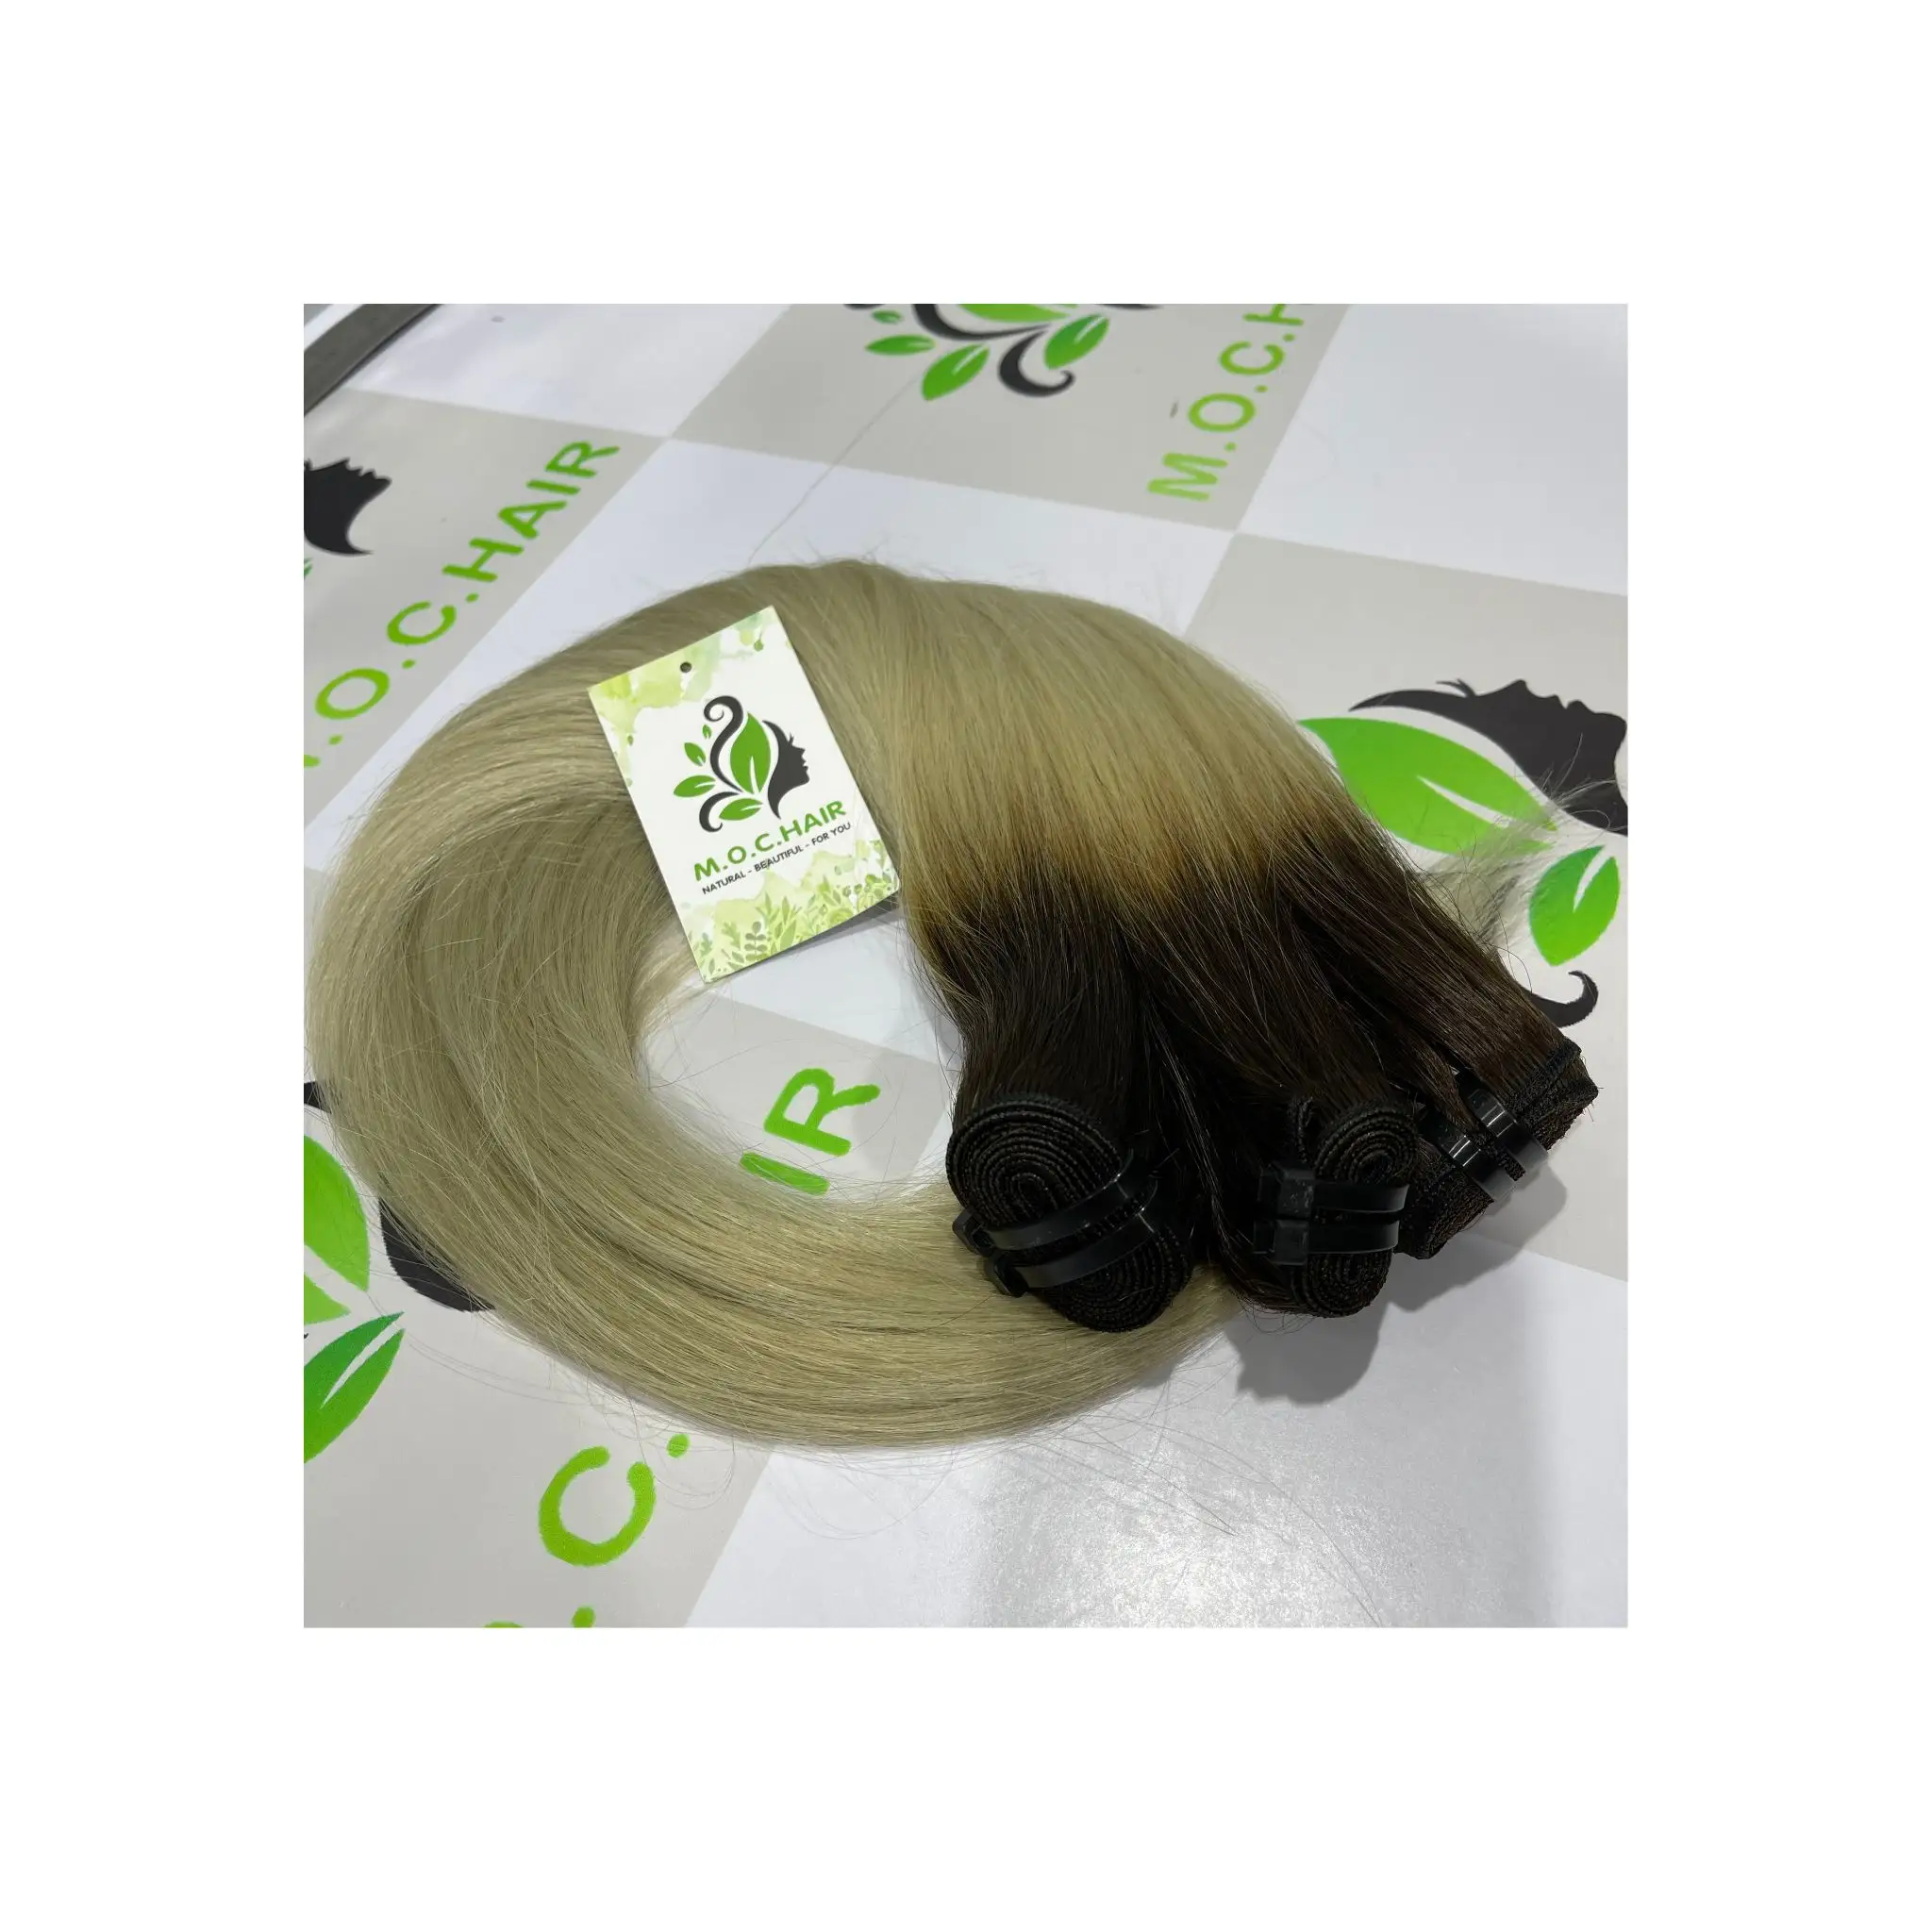 Pas cher 100% vrais cheveux teintables fabriqués par l'homme Tendance cheveux tissés auburn 8 - 40 pouces de long Vietnam fournisseur de cheveux